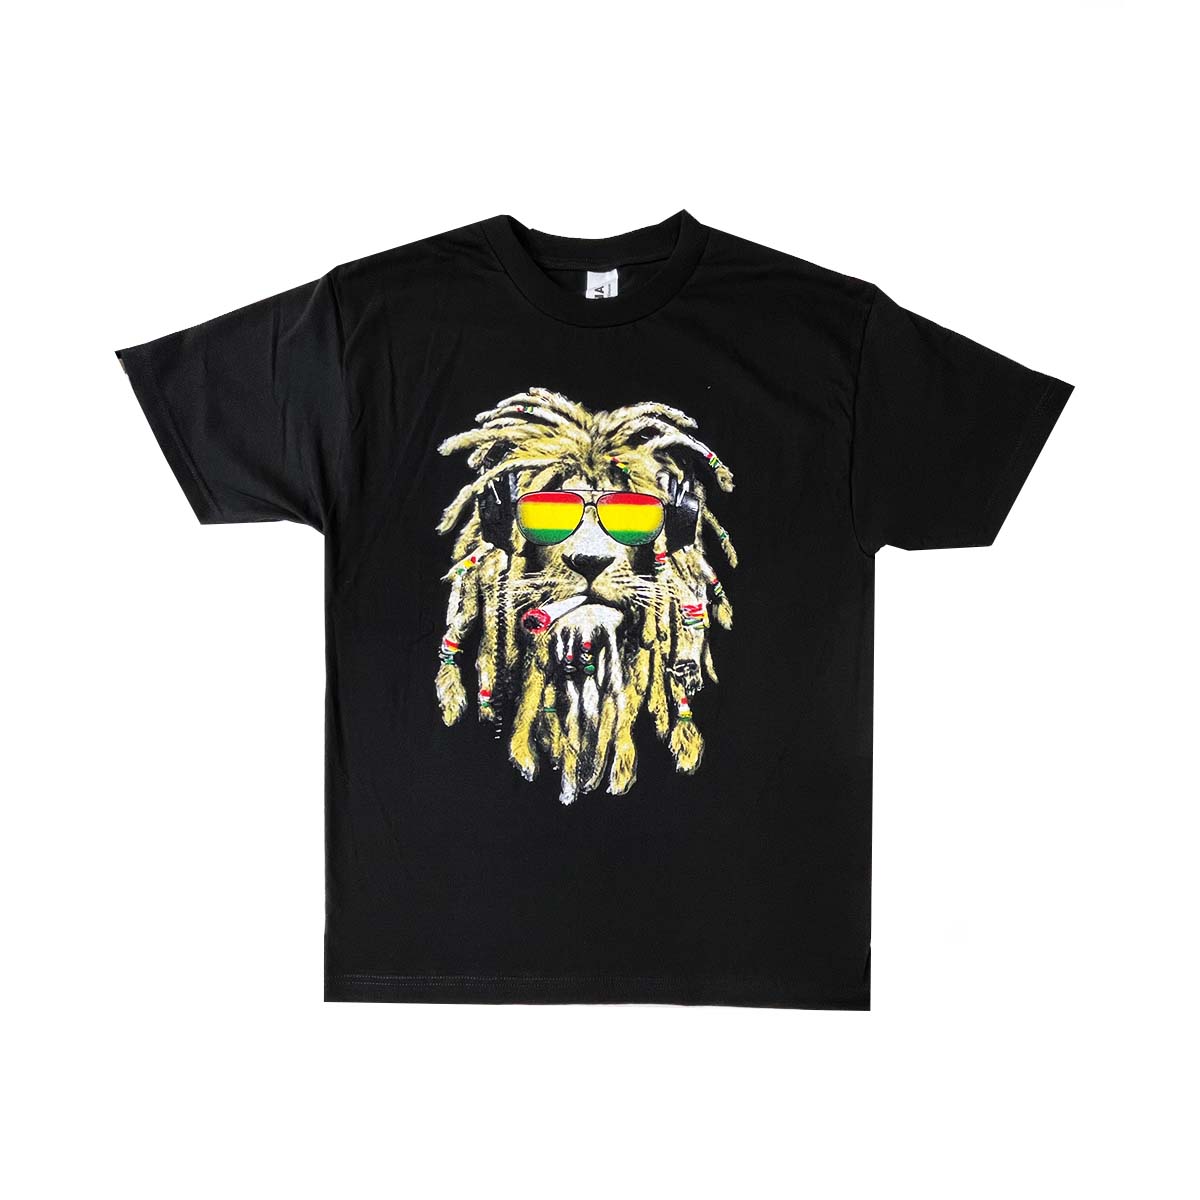 Cool Lion 100% Cotton T-Shirt, Pack of 5 Units, S, M, L, XL, XXL